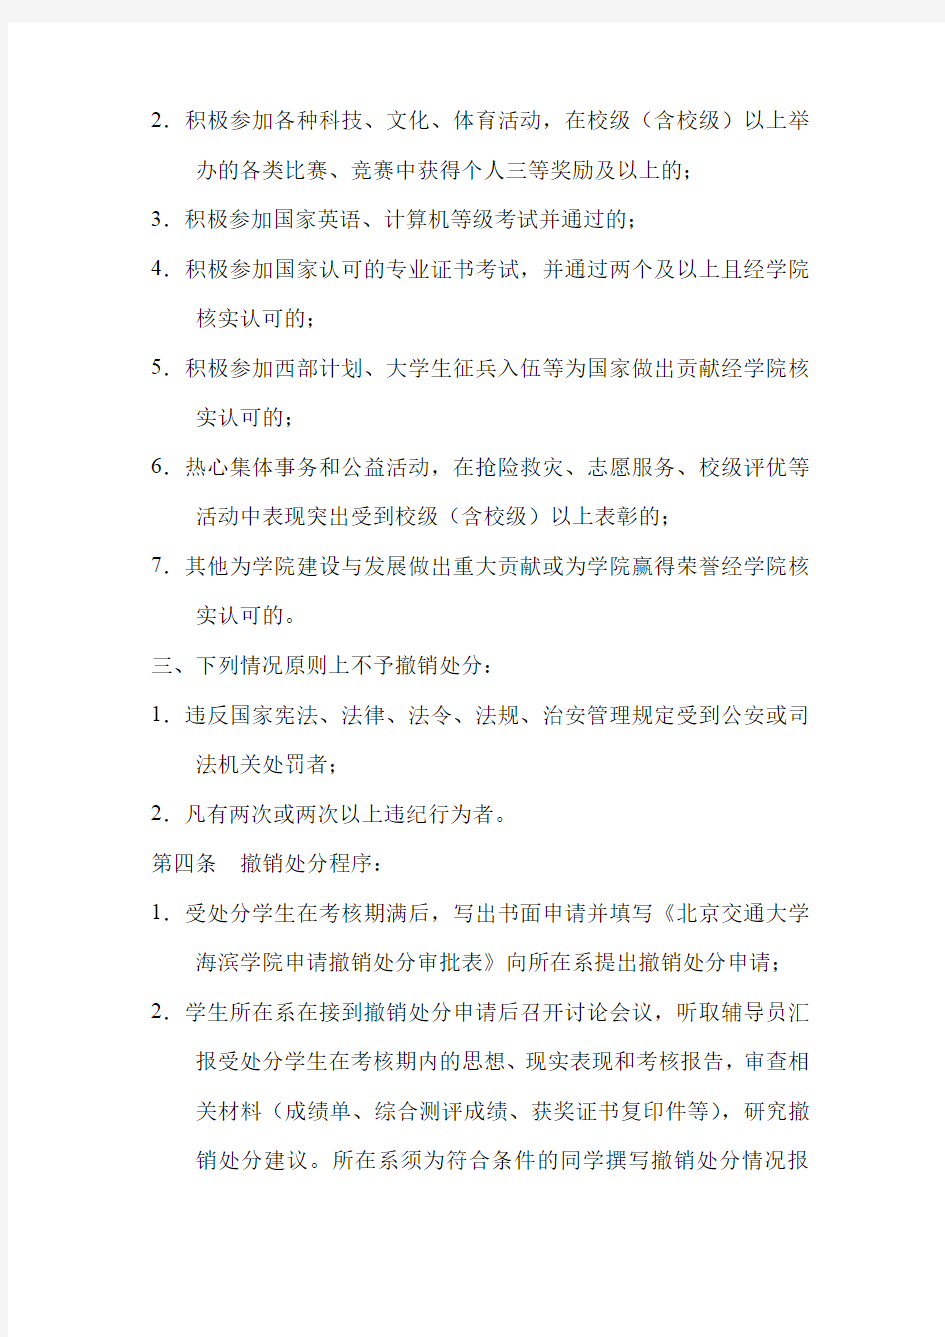 北京交通大学海滨学院撤销学生违纪处分实施办法 (试行)